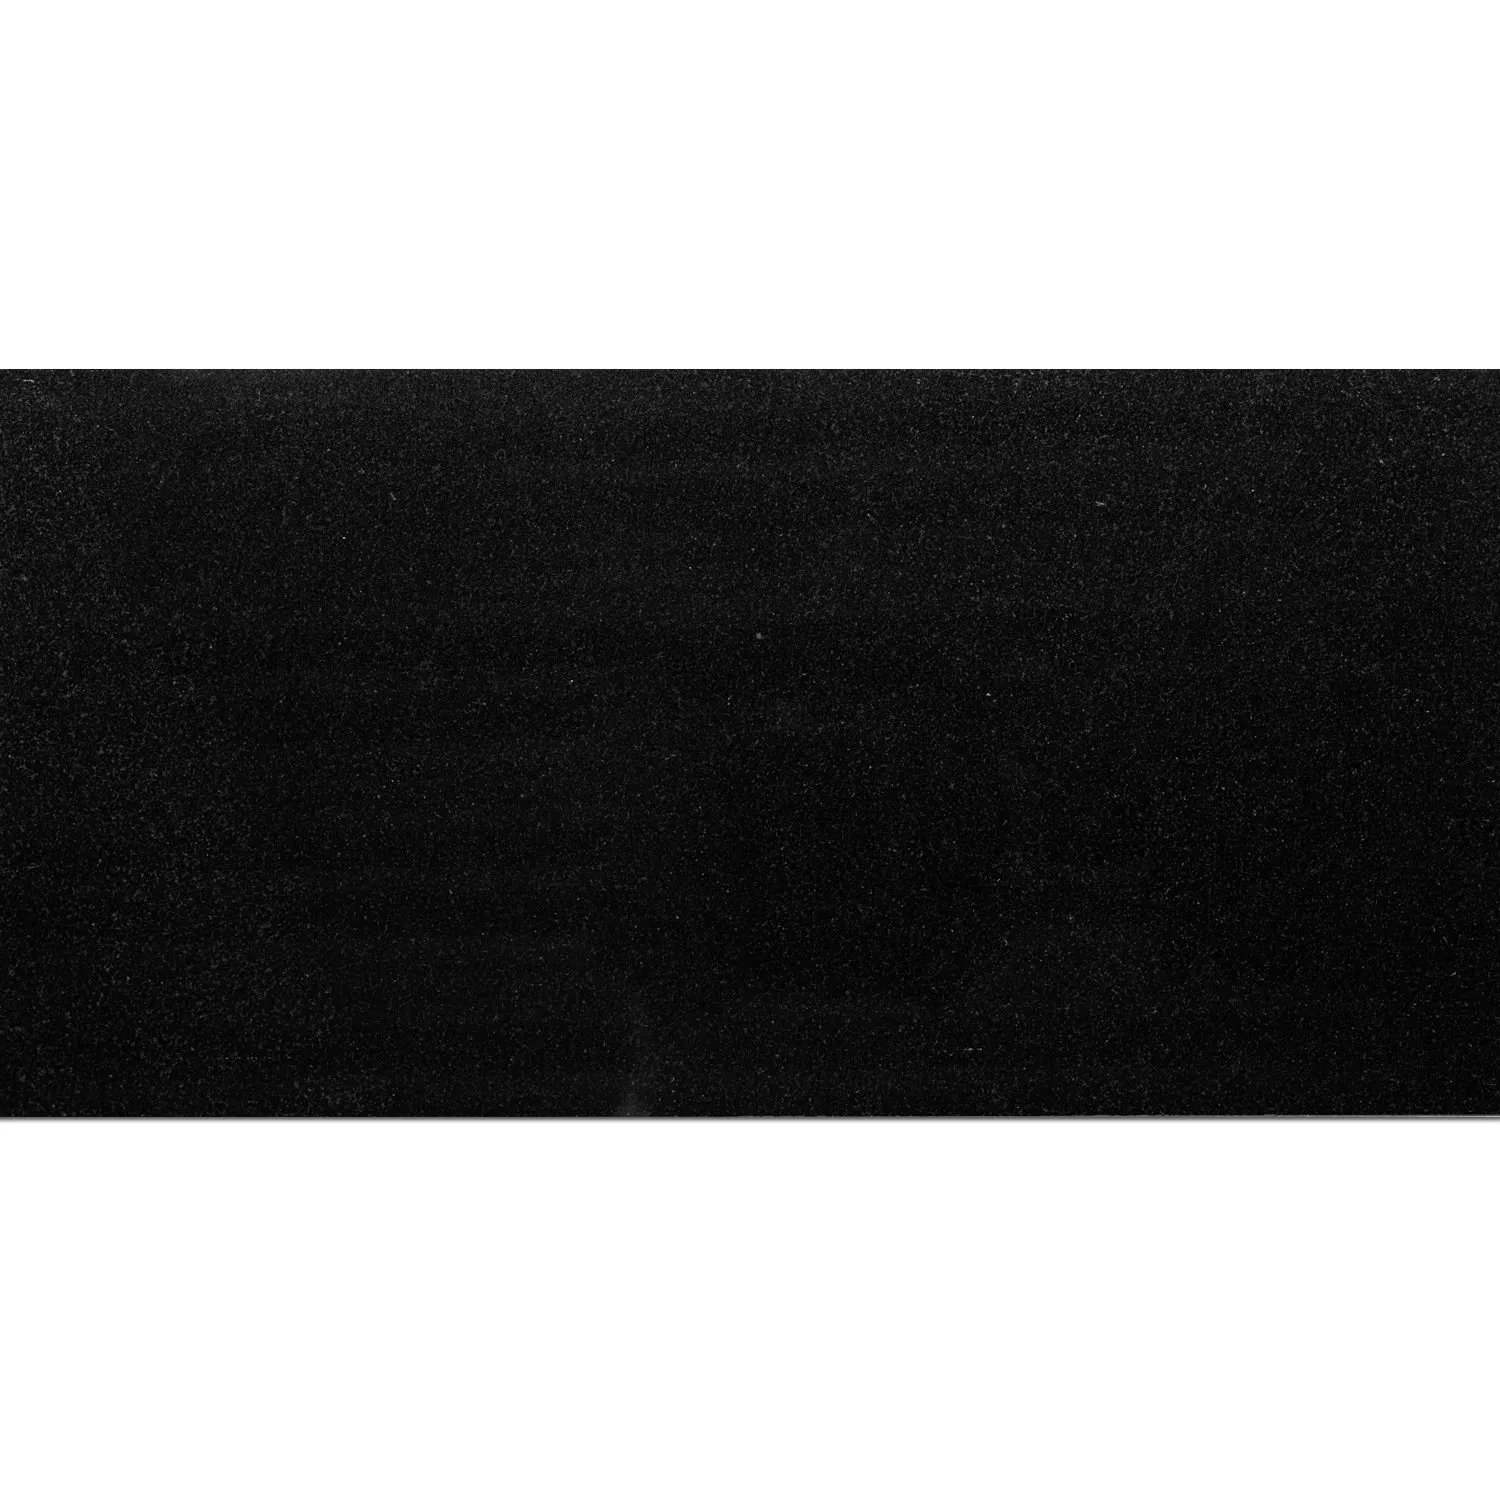 Ladrilhos De Pedra Natural Granito Absolute Black Polido 30,5x61cm